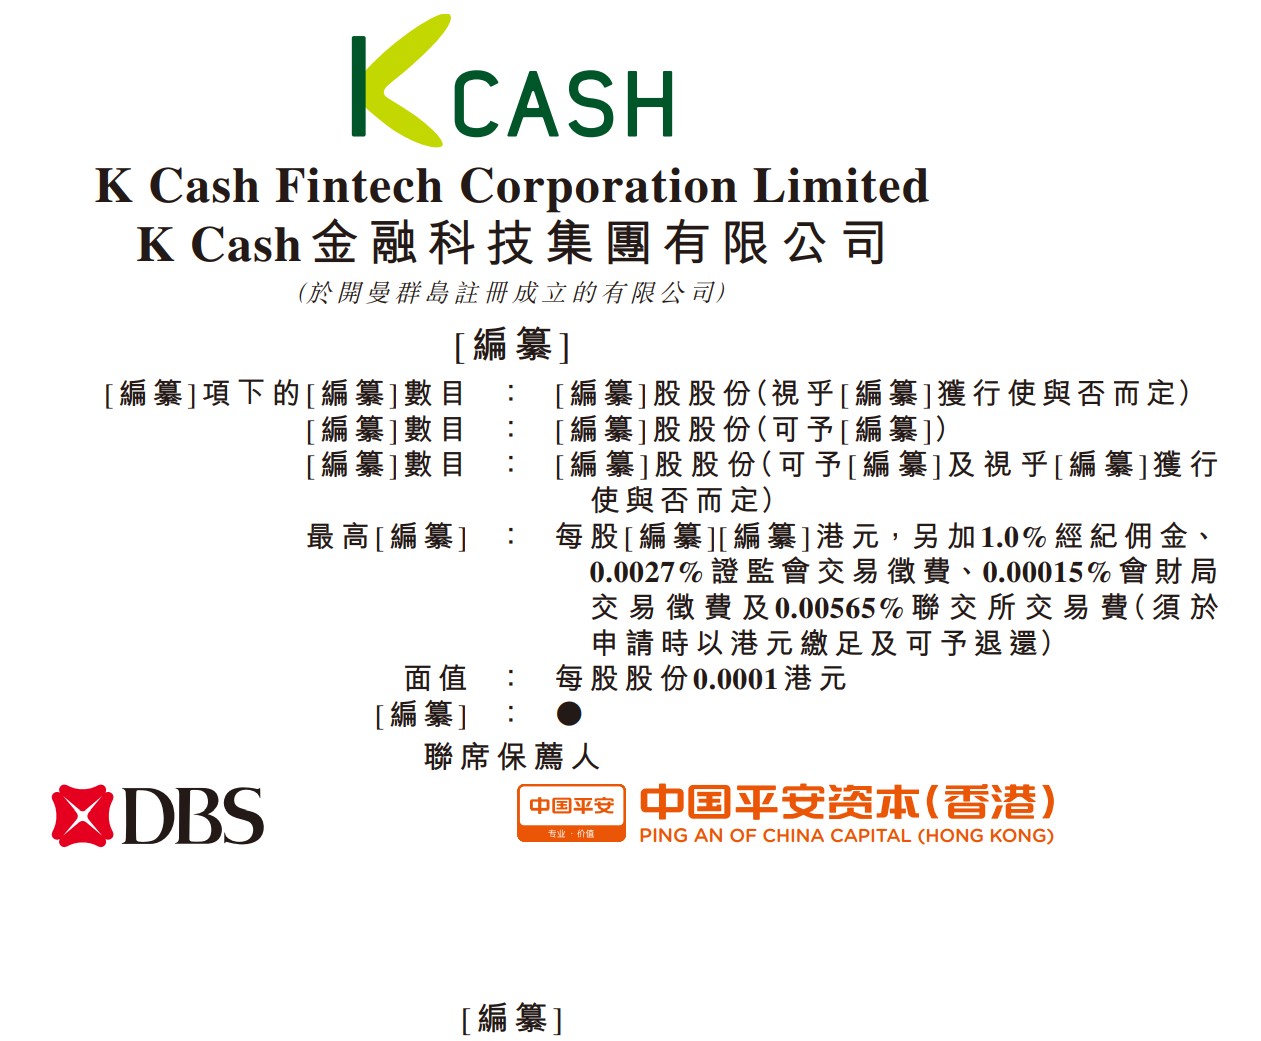 新股消息 | K Cash金融科技递表港交所 近两年收入持续下滑